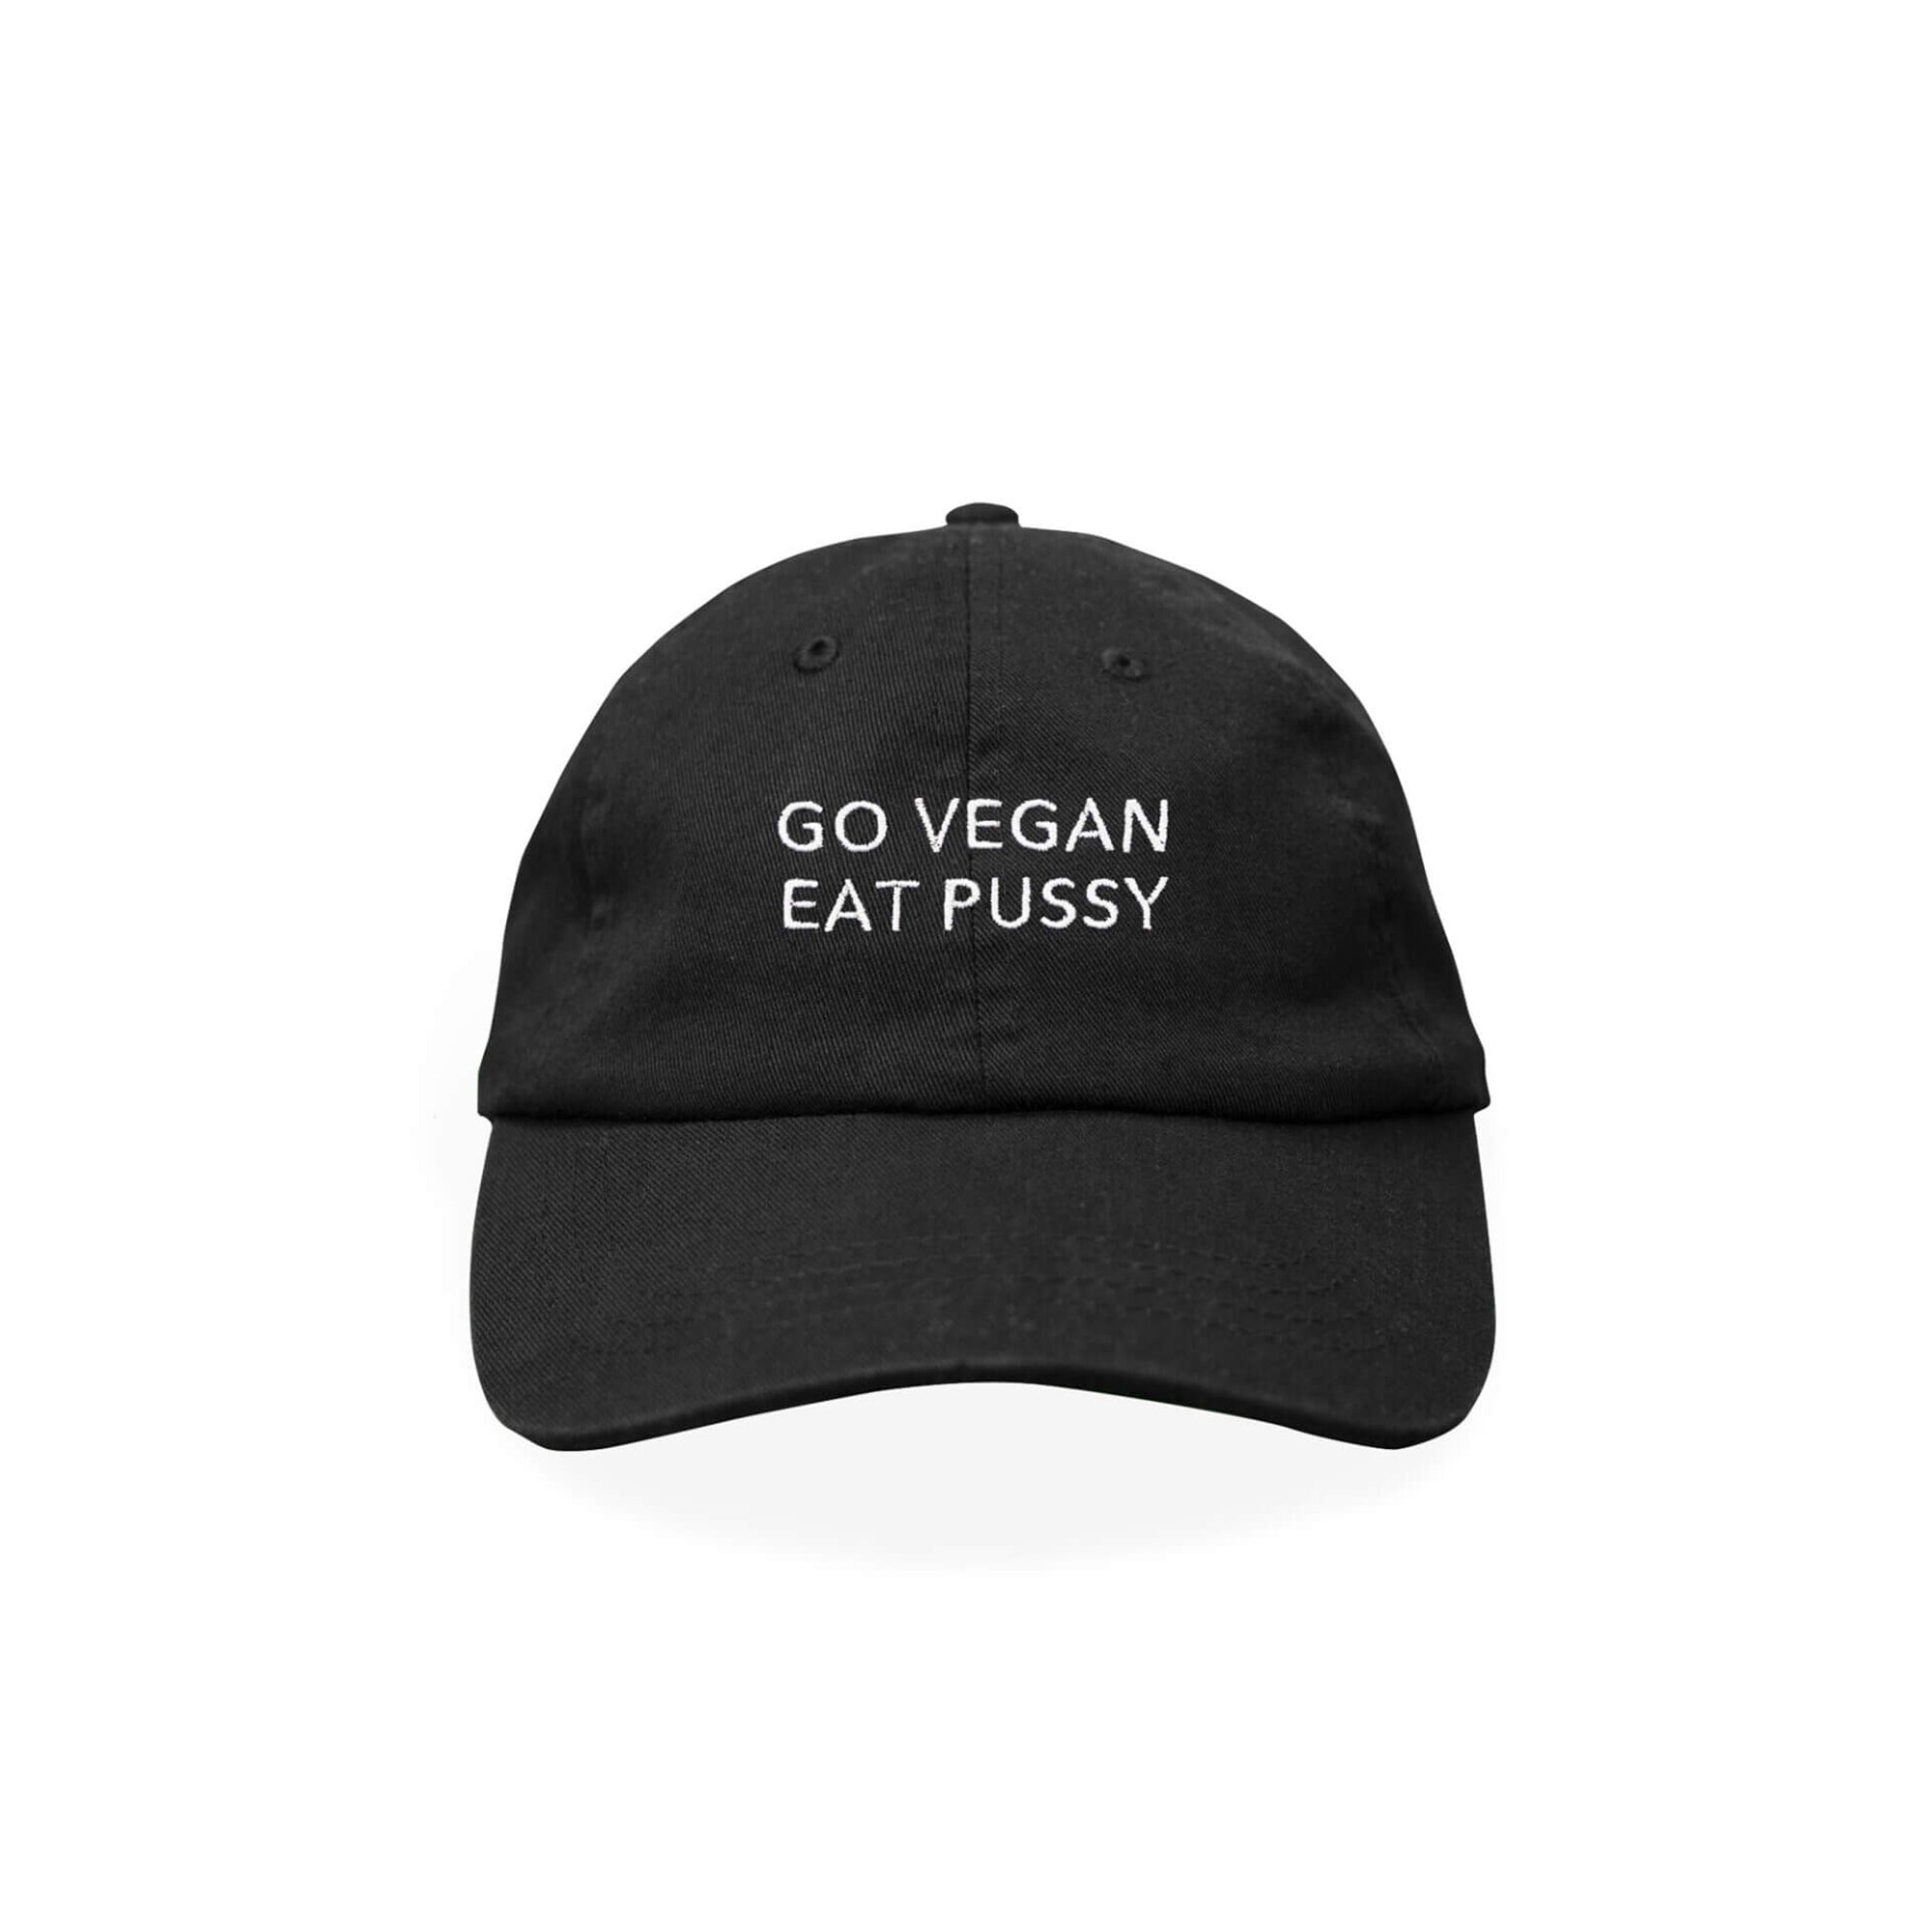 Go vegan eat pussy - Cap